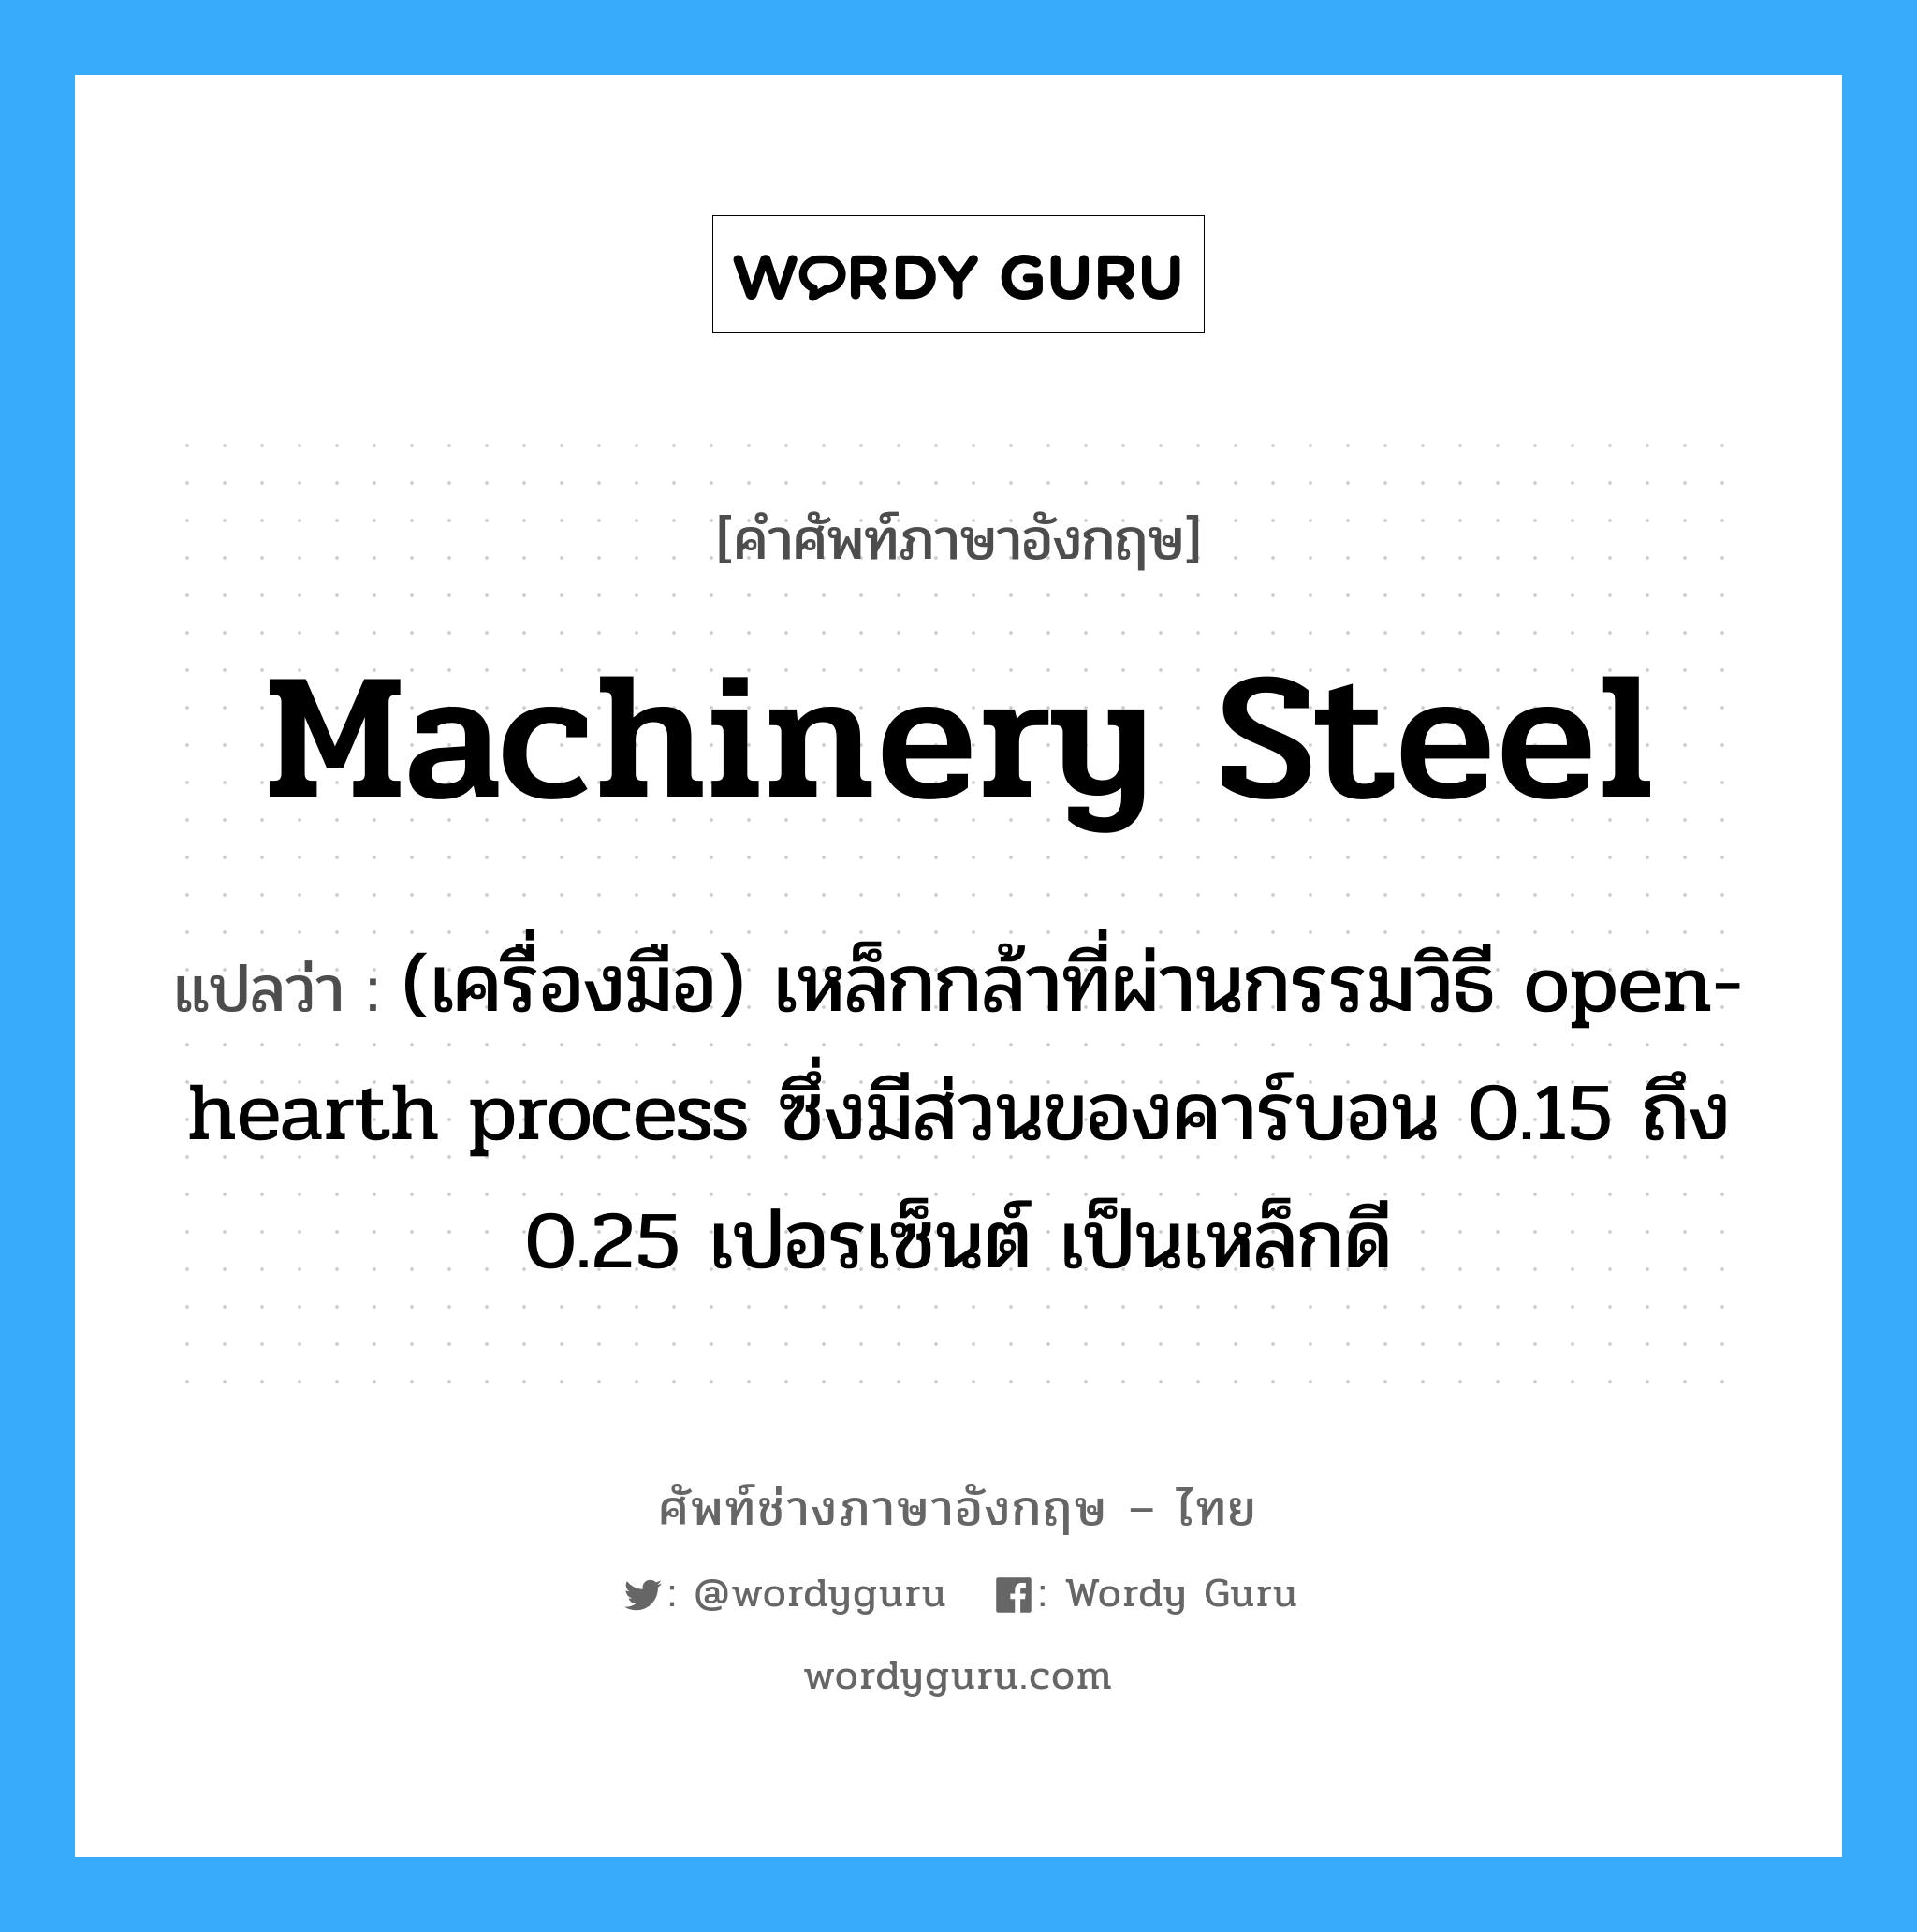 machinery steel แปลว่า?, คำศัพท์ช่างภาษาอังกฤษ - ไทย machinery steel คำศัพท์ภาษาอังกฤษ machinery steel แปลว่า (เครื่องมือ) เหล็กกล้าที่ผ่านกรรมวิธี open-hearth process ซึ่งมีส่วนของคาร์บอน 0.15 ถึง 0.25 เปอรเซ็นต์ เป็นเหล็กดี